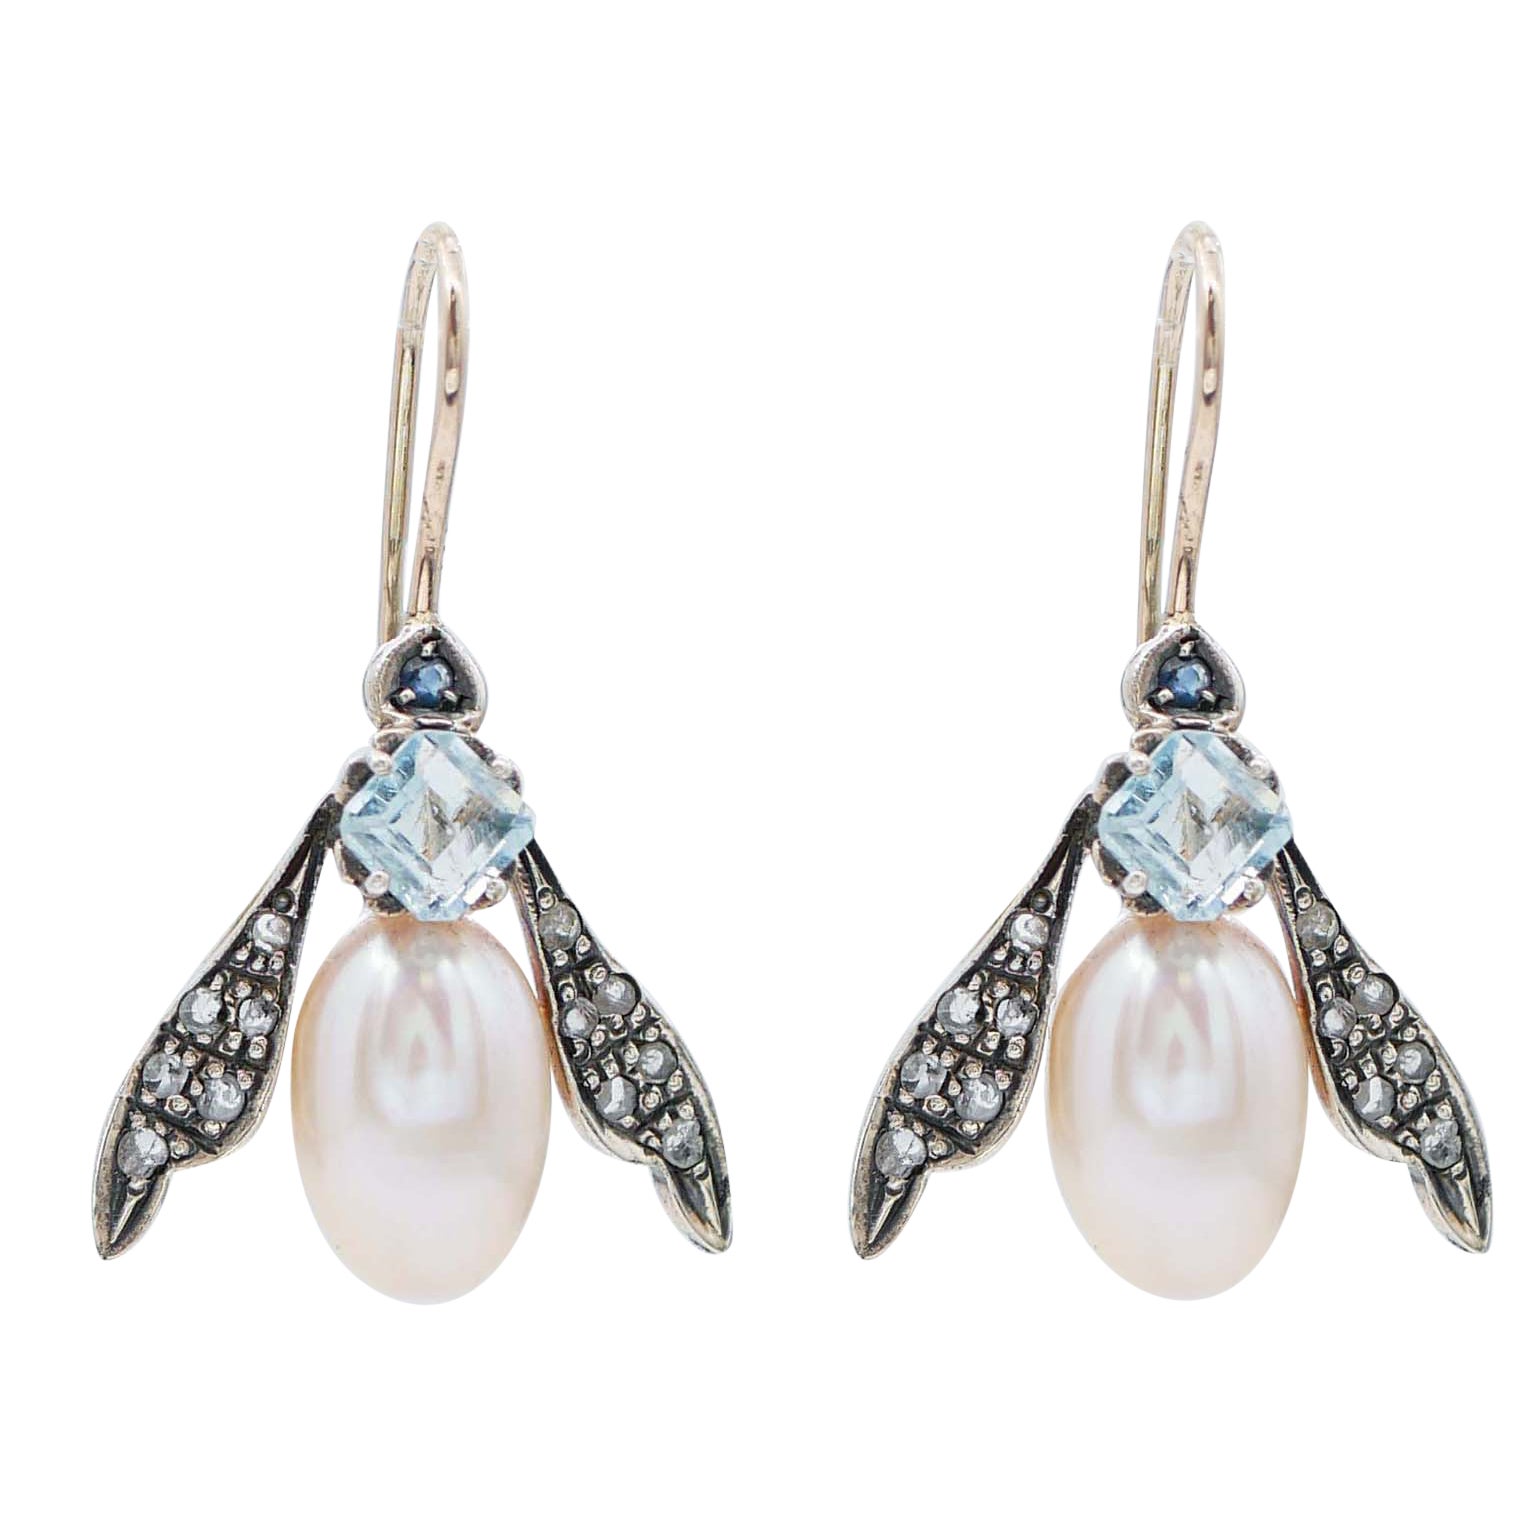 Ohrringe in Fliegenform mit Topas, Saphiren, Perlen, Diamanten, Roségold und Silber